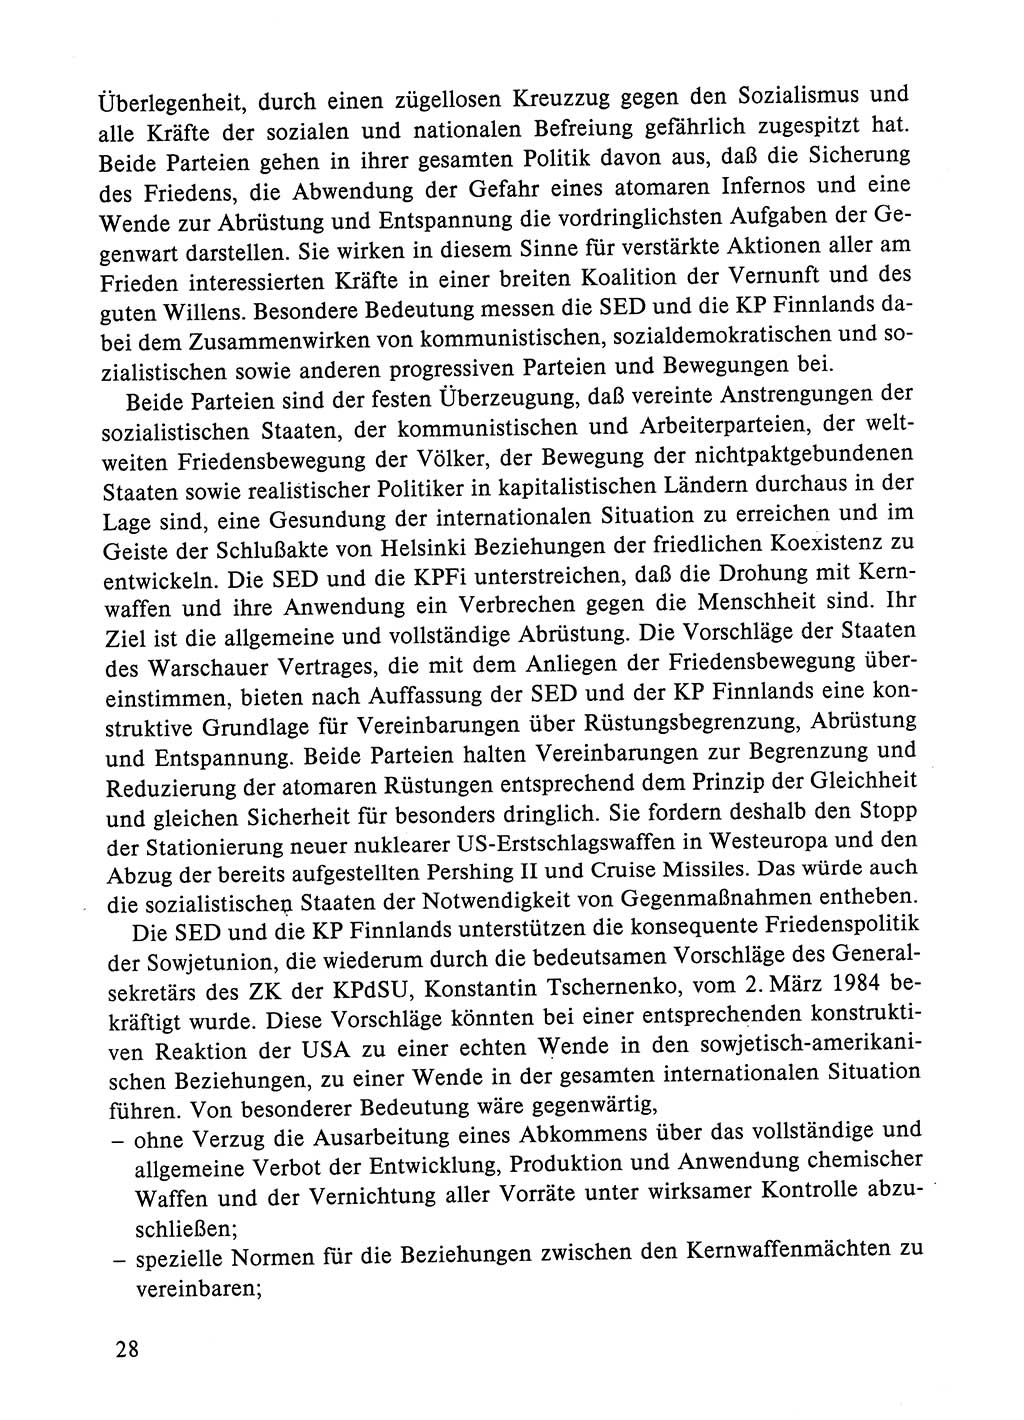 Dokumente der Sozialistischen Einheitspartei Deutschlands (SED) [Deutsche Demokratische Republik (DDR)] 1984-1985, Seite 28 (Dok. SED DDR 1984-1985, S. 28)